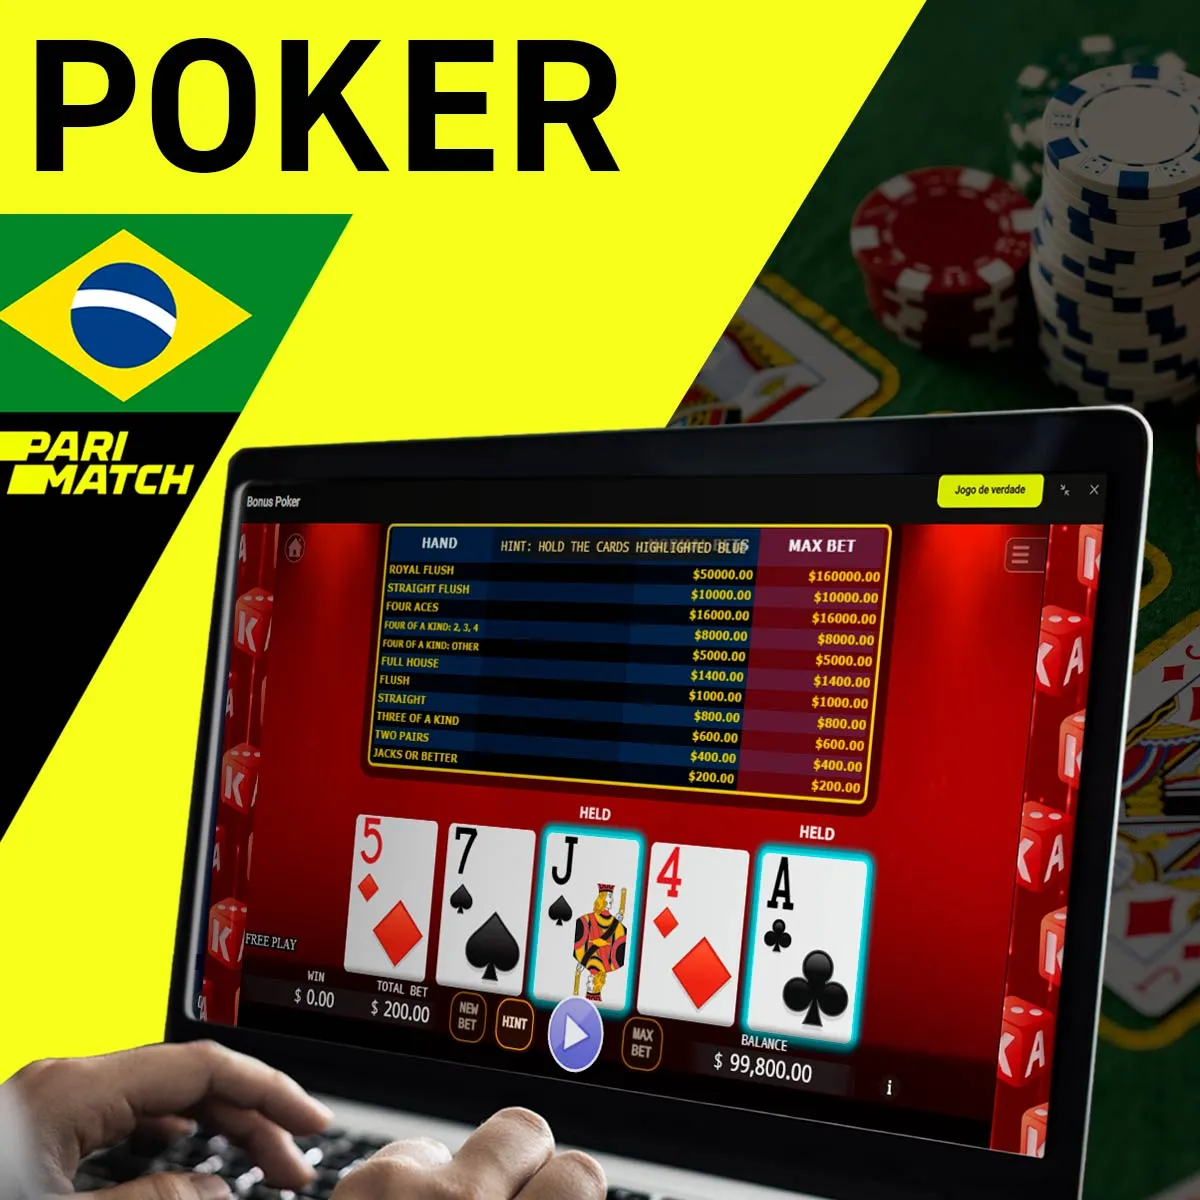 Poker de cassino na casa de apostas Parimatch no Brasil